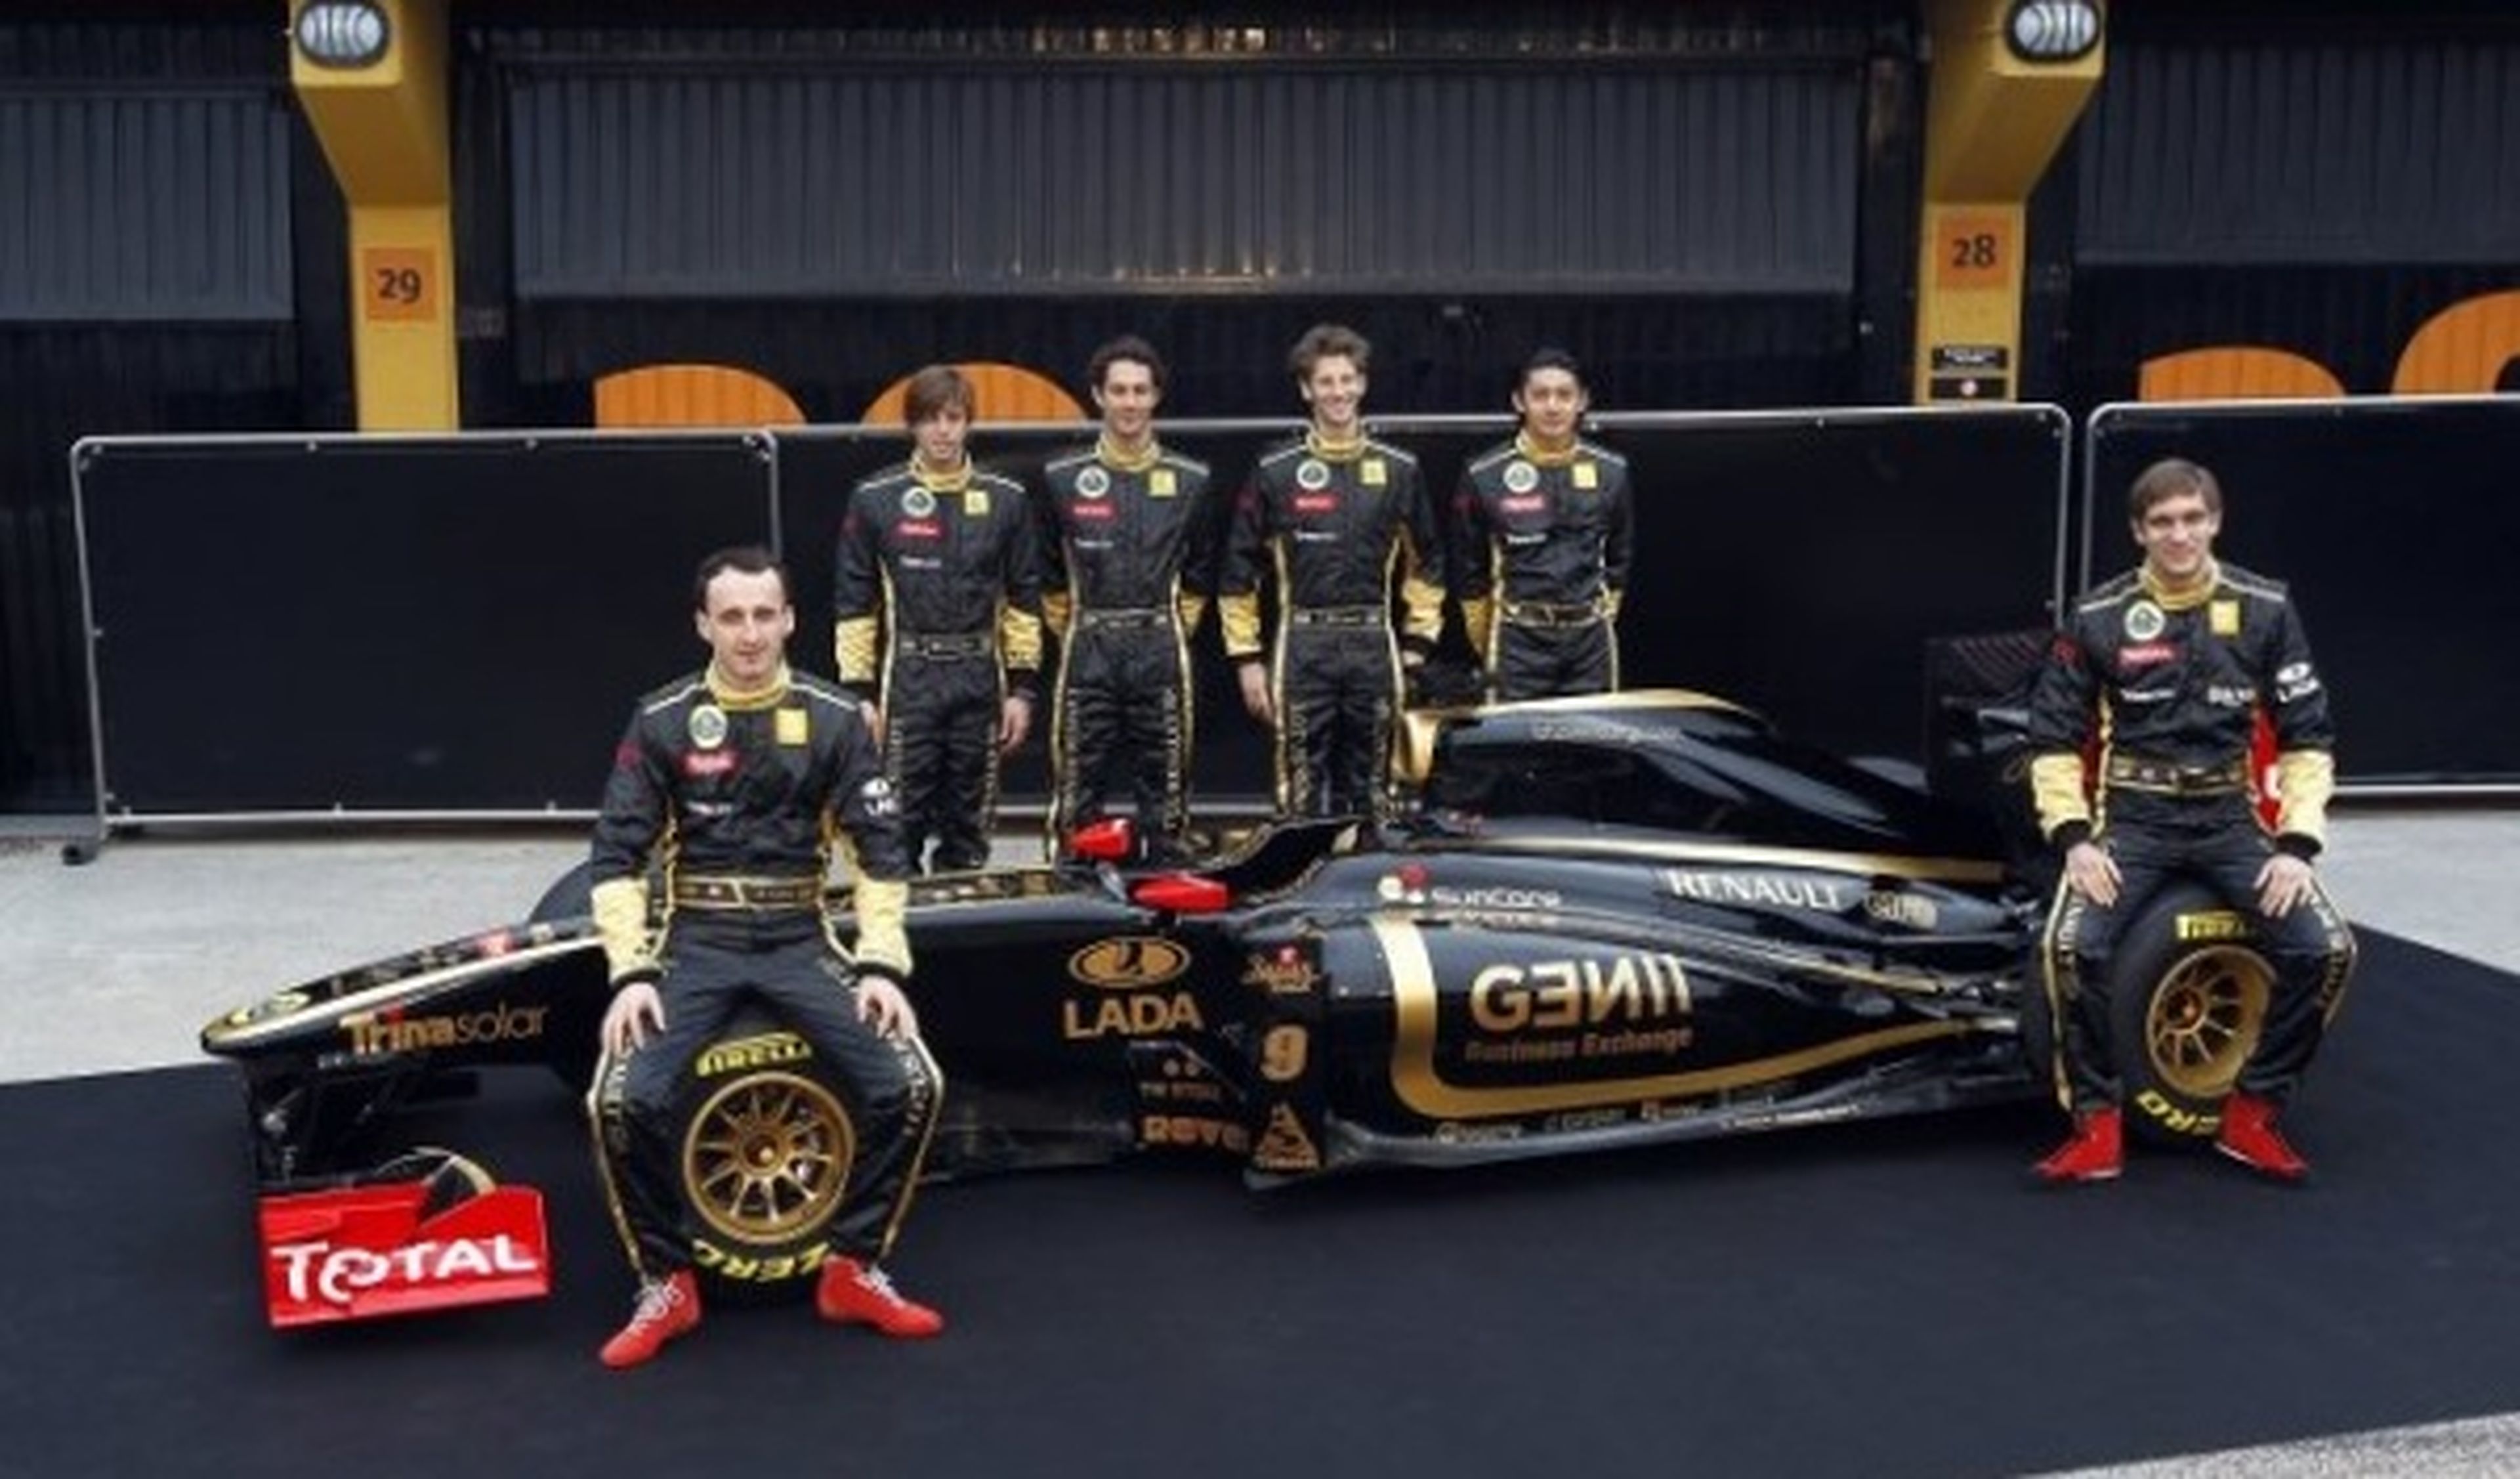 Renault, Lotus y Virgin de F1 cambian de nombre en 2012